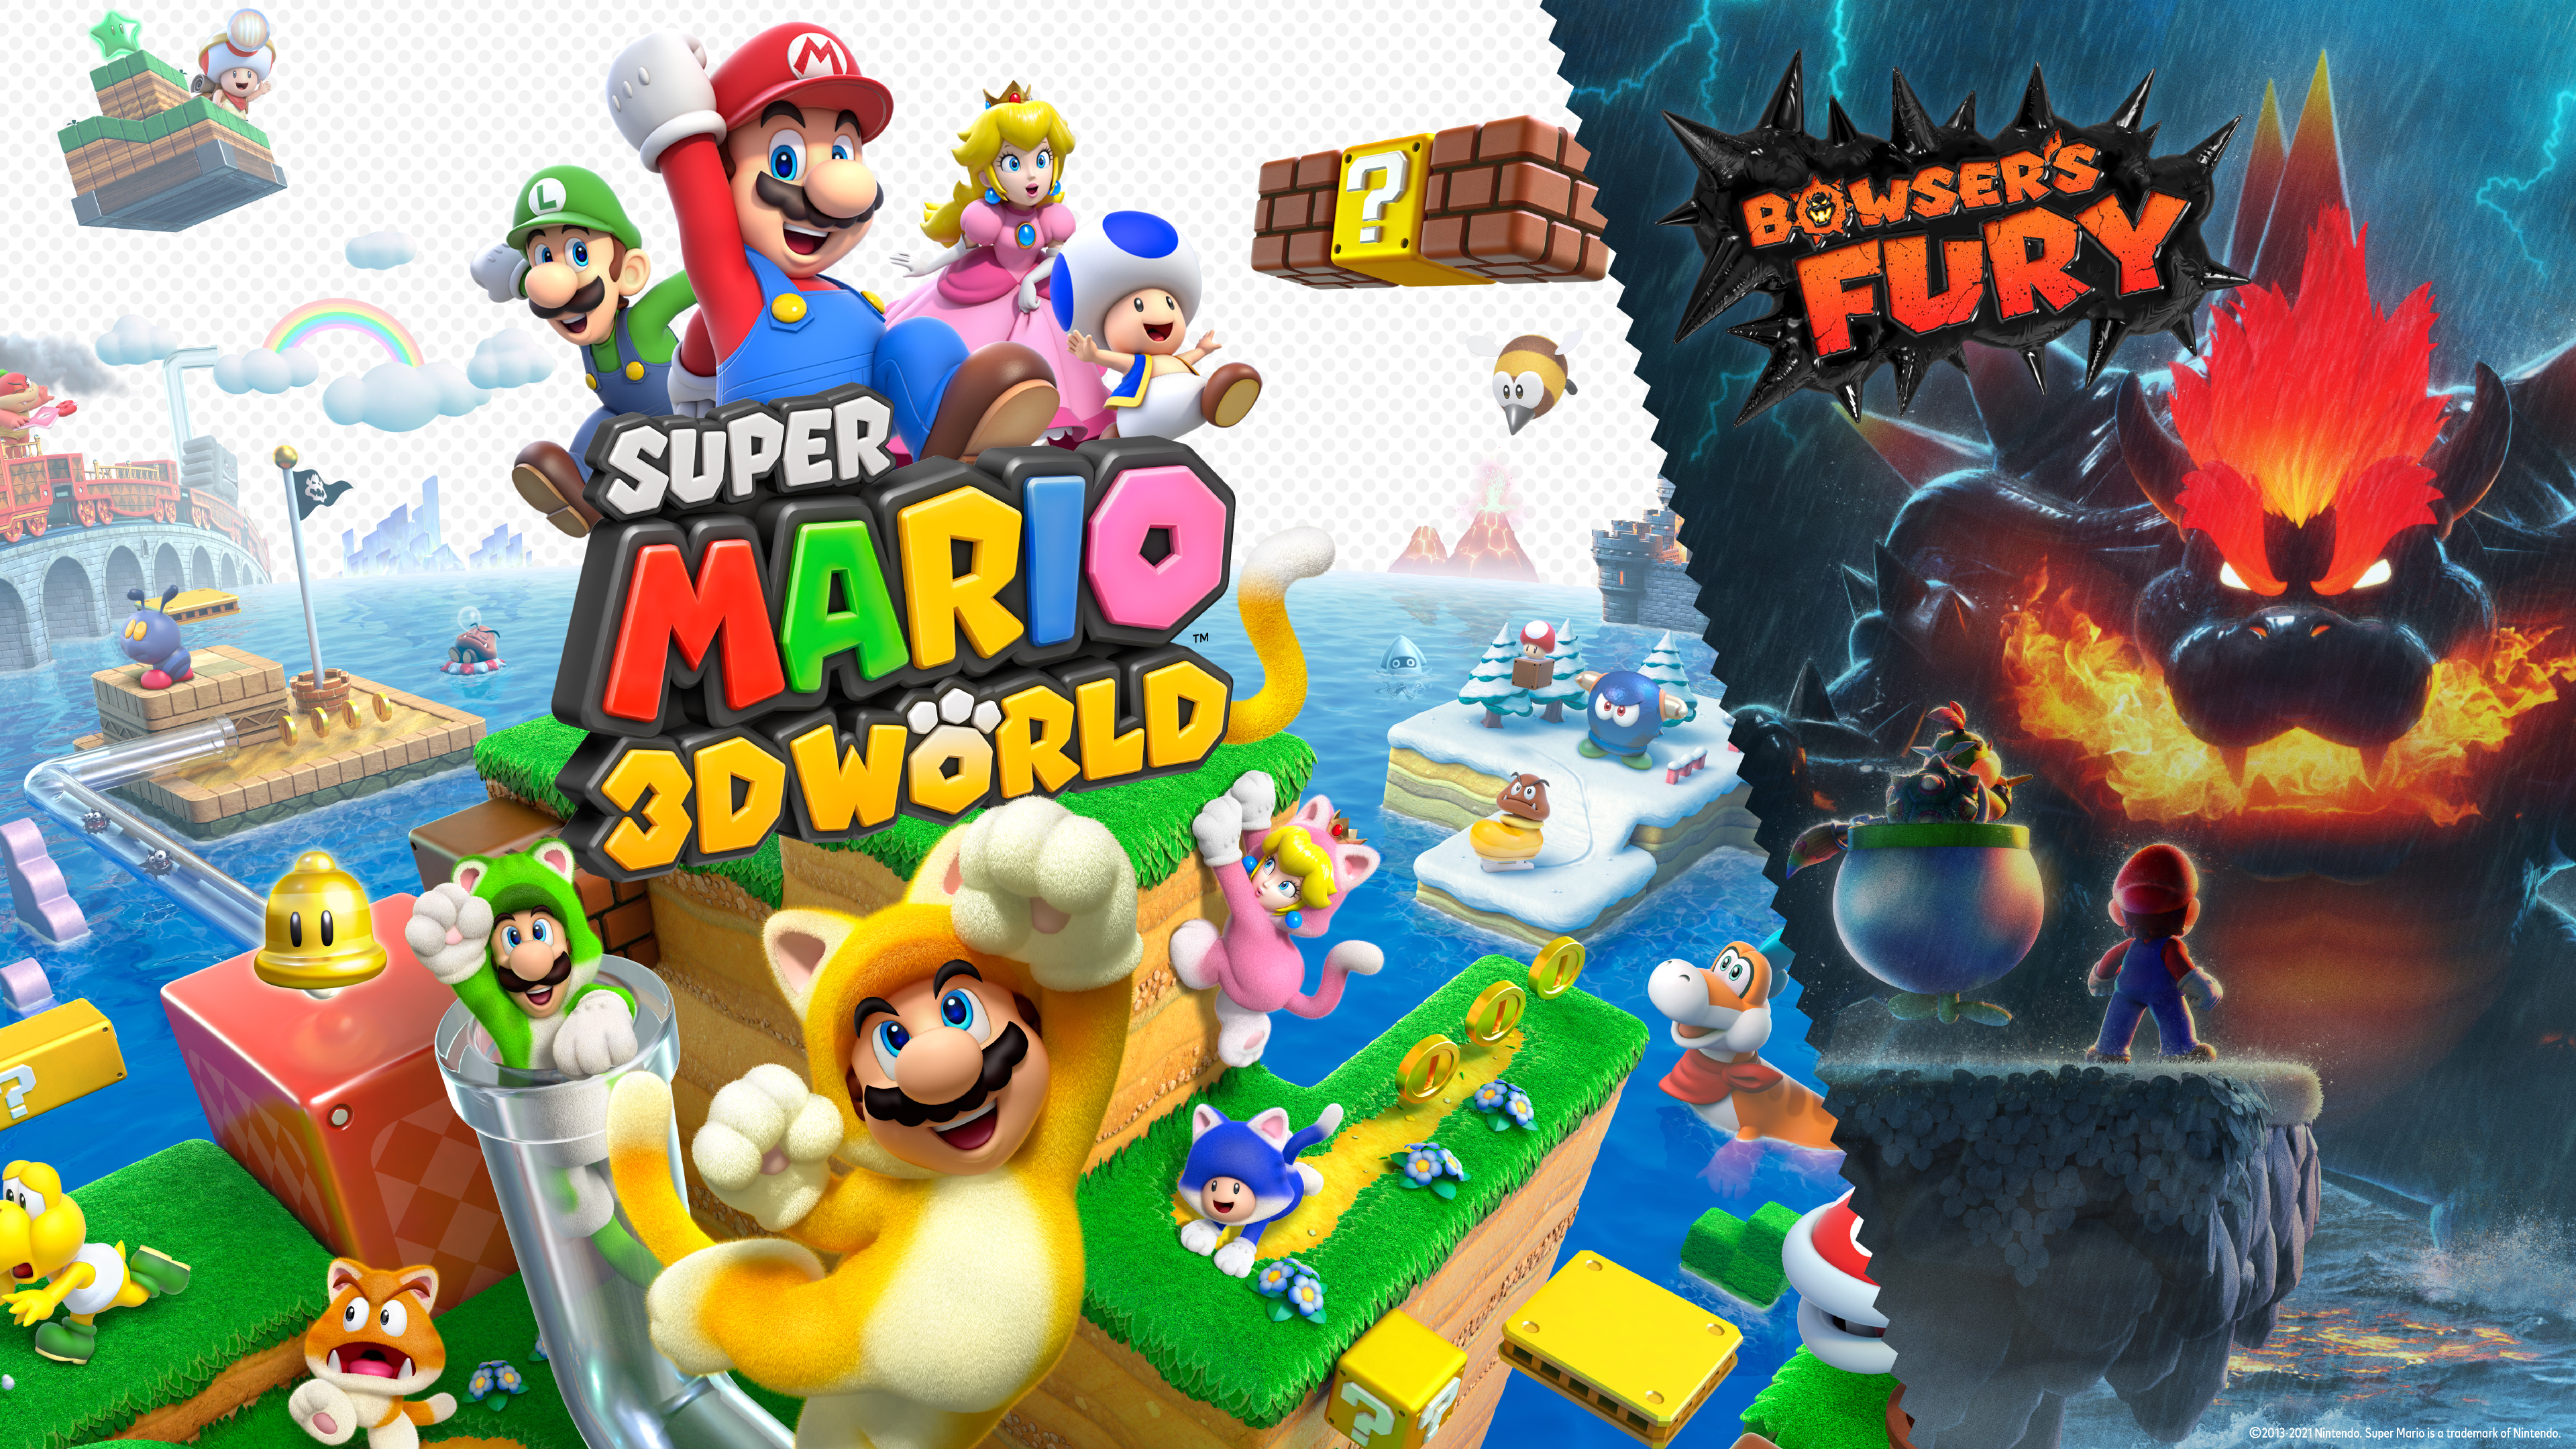 Jeux Vidéo Super Mario 3D World + Bowser’s Fury Fond d'écran HD | Image